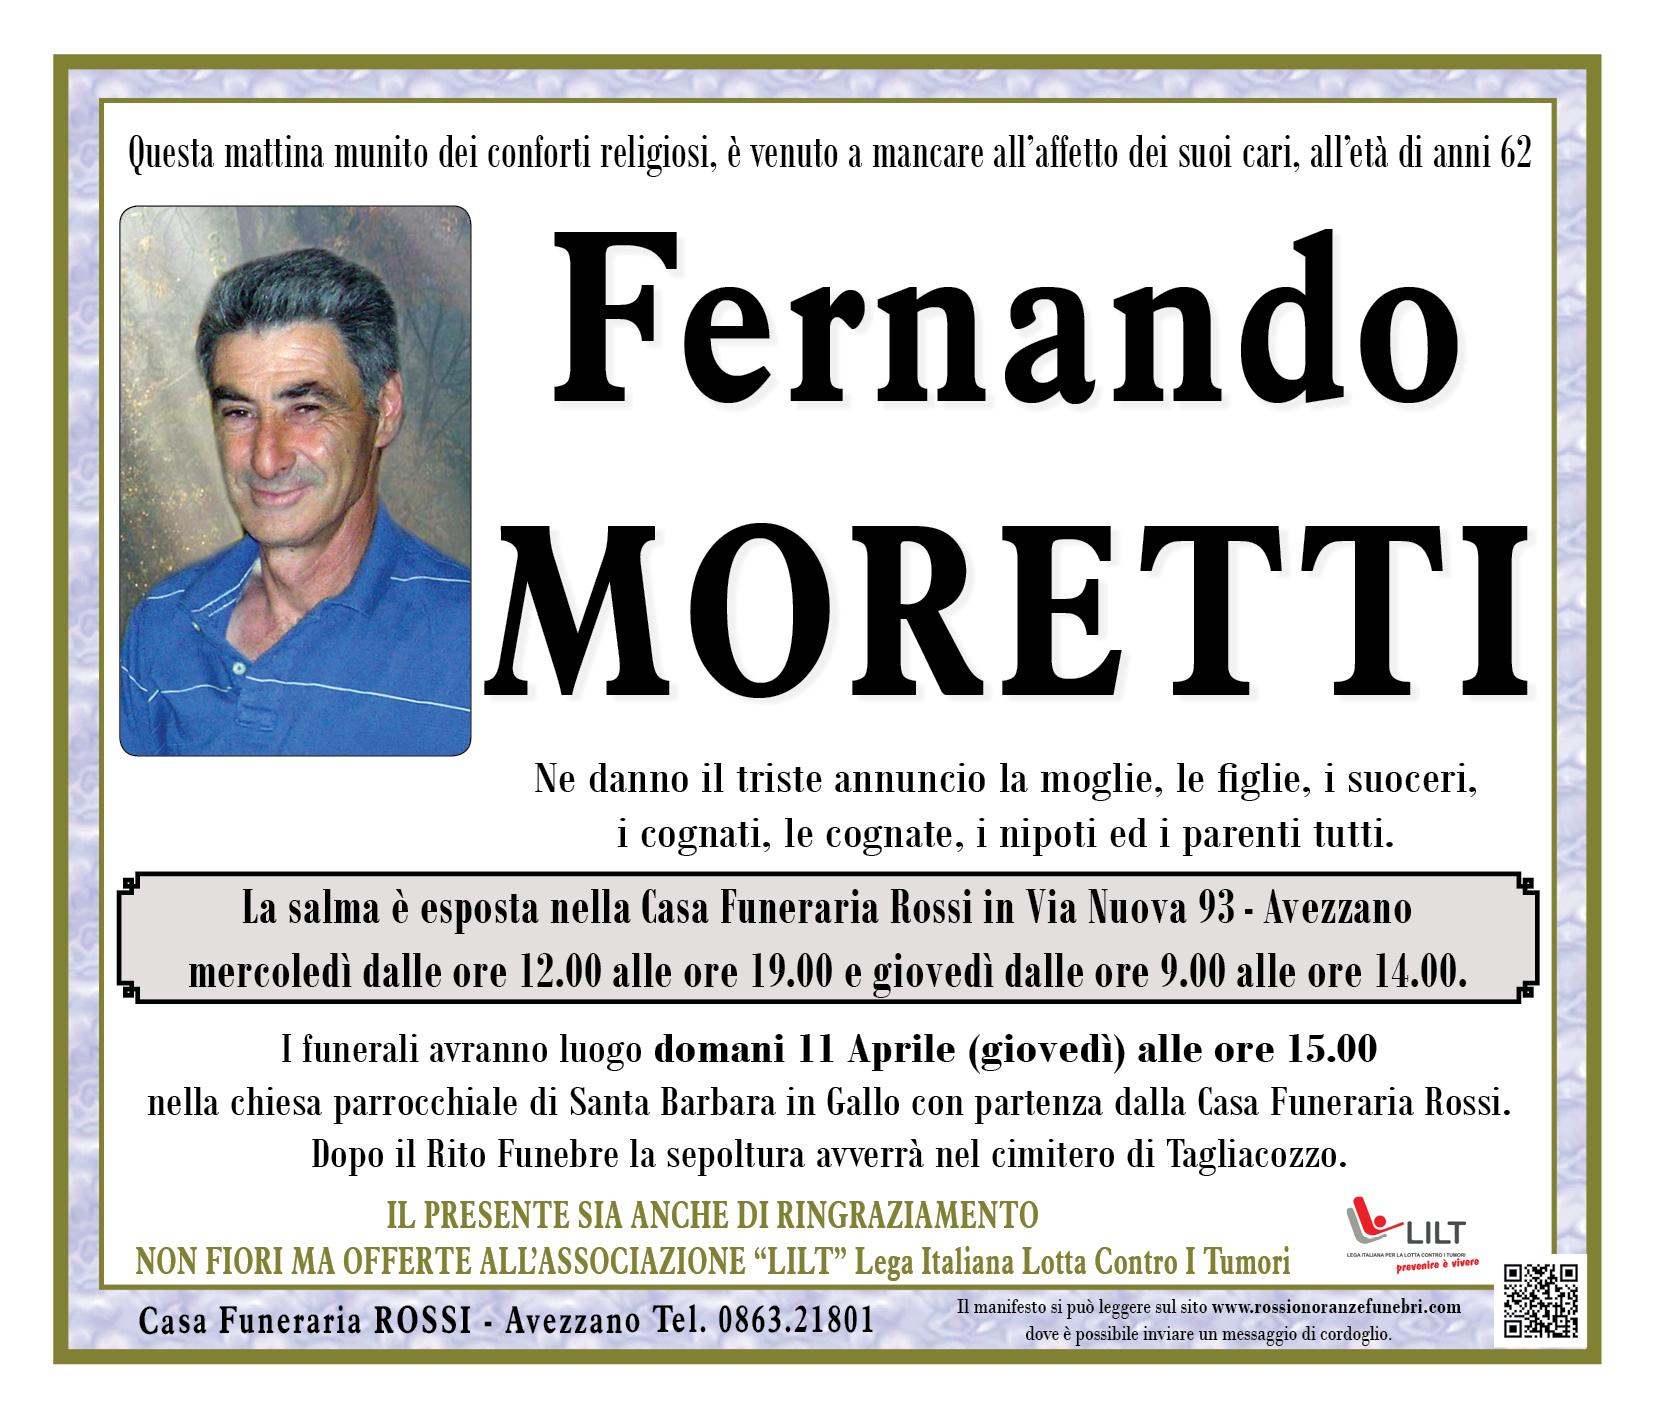 Fernando Moretti